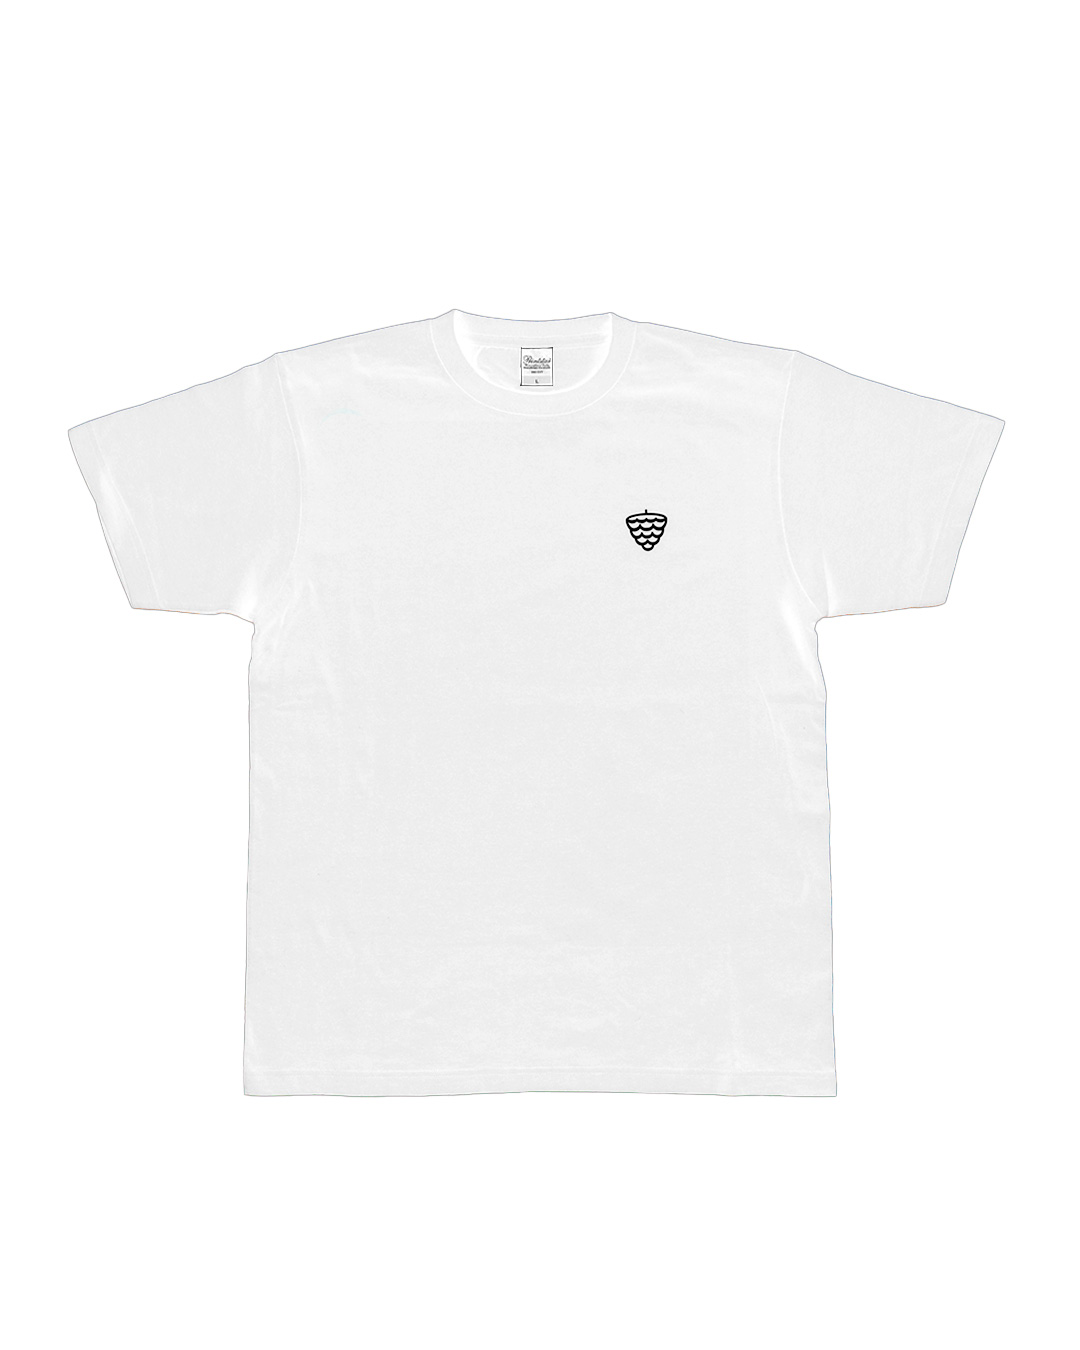 솔방울 티셔츠 (흰색)